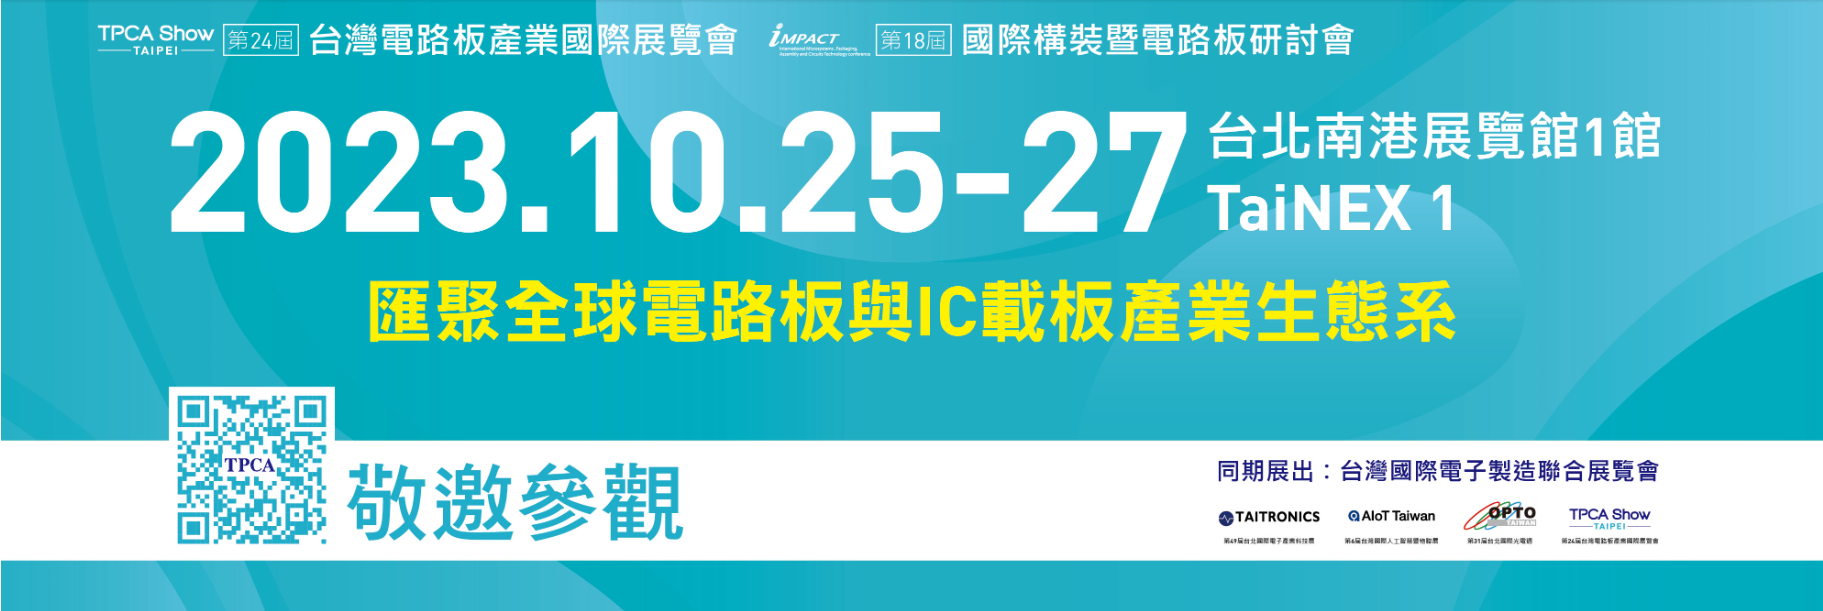 第24屆 台灣電路板產業國際展覽會